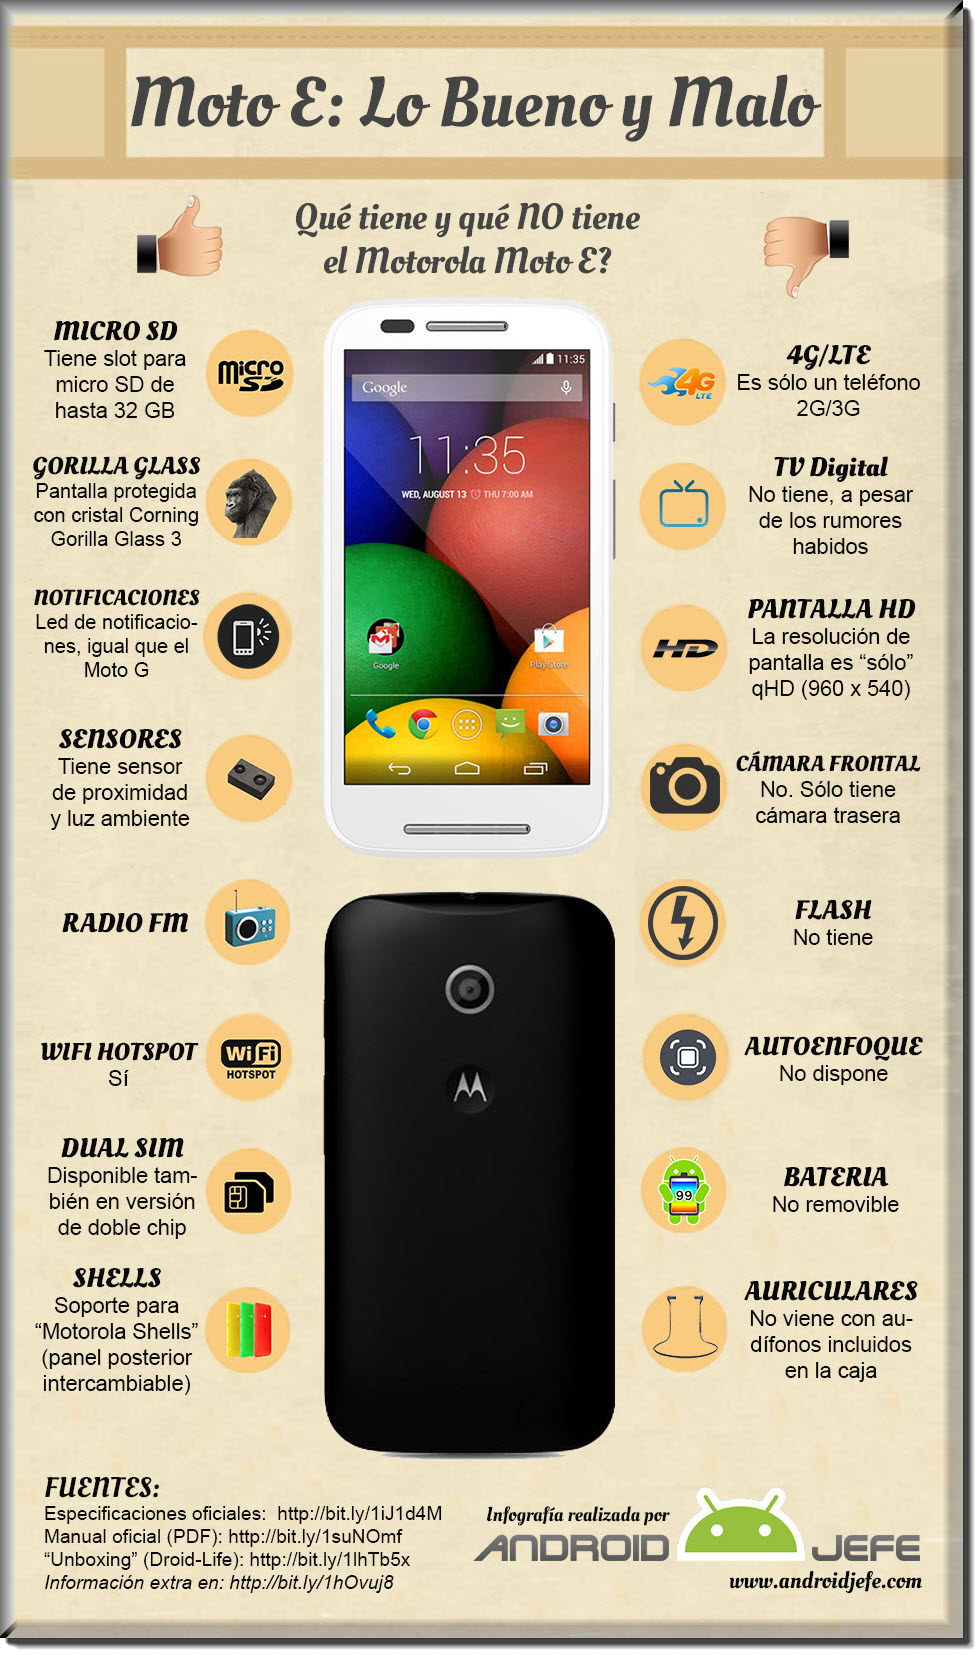 Que tal es el Motorola Moto E? Bueno o malo? Comprar o no? Opiniones